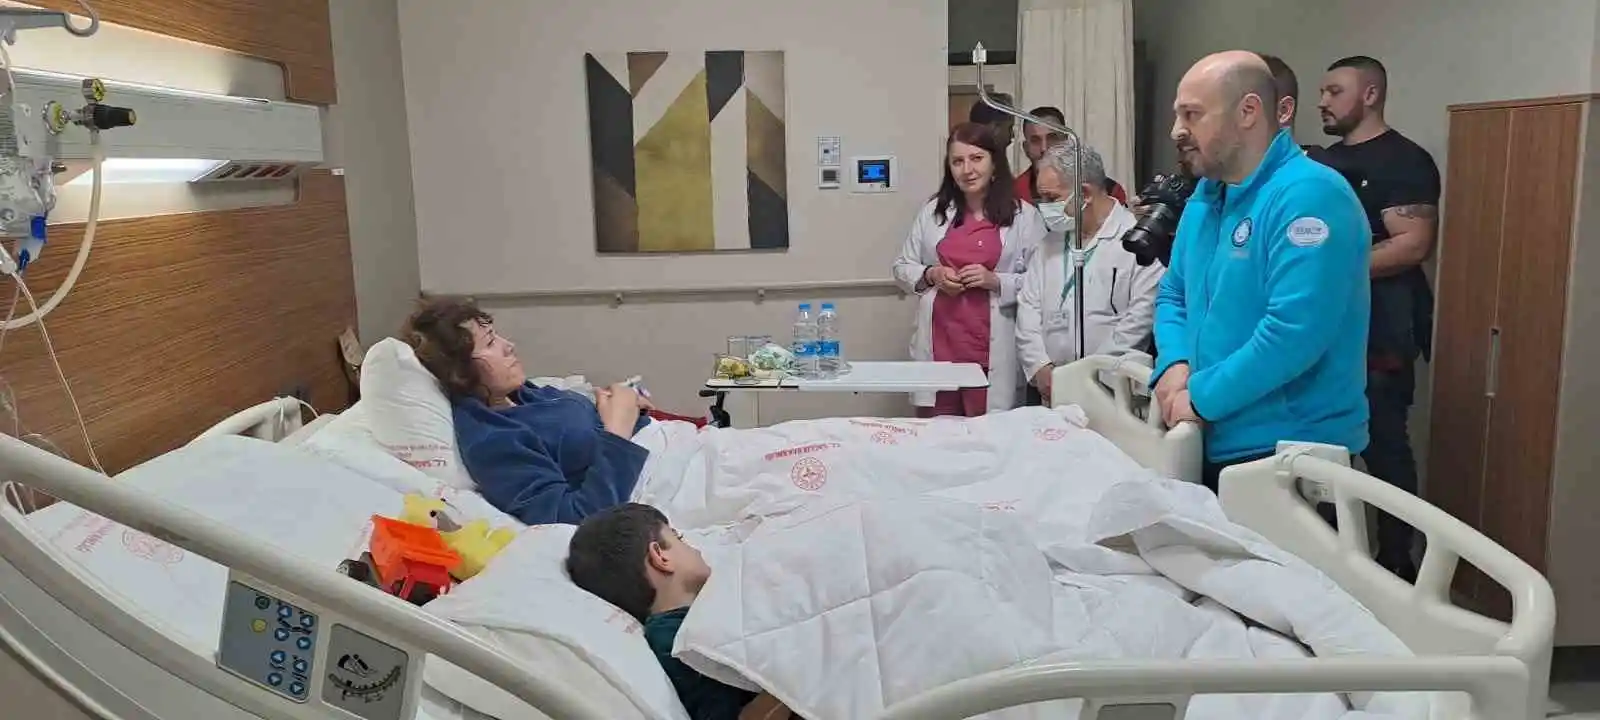 Adana İl Sağlık Müdürü Nacar, yaralı kurtulan vatandaşları hastanede ziyaret etti
